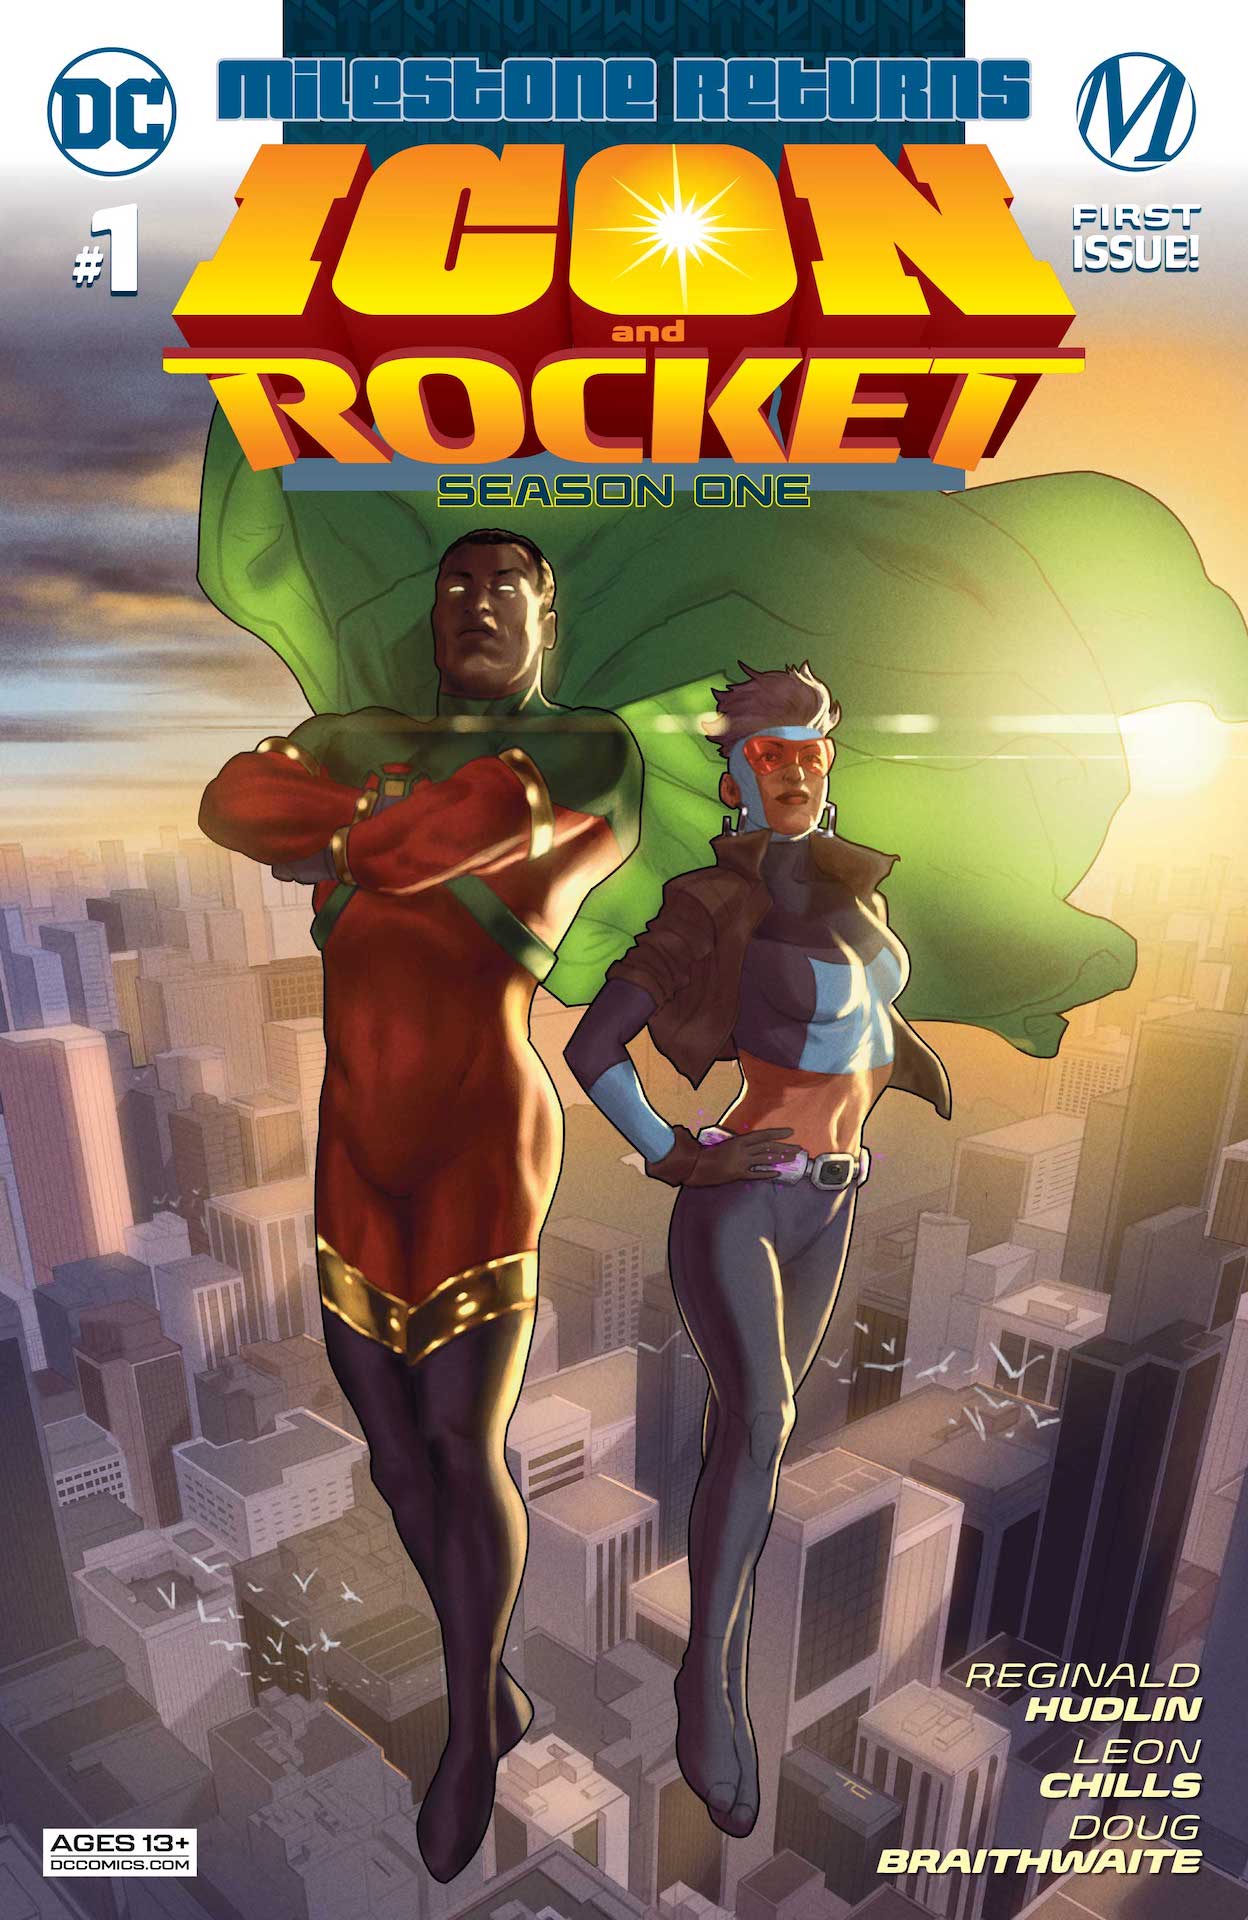 DC Preview: Icon & Rocket #1: Season One